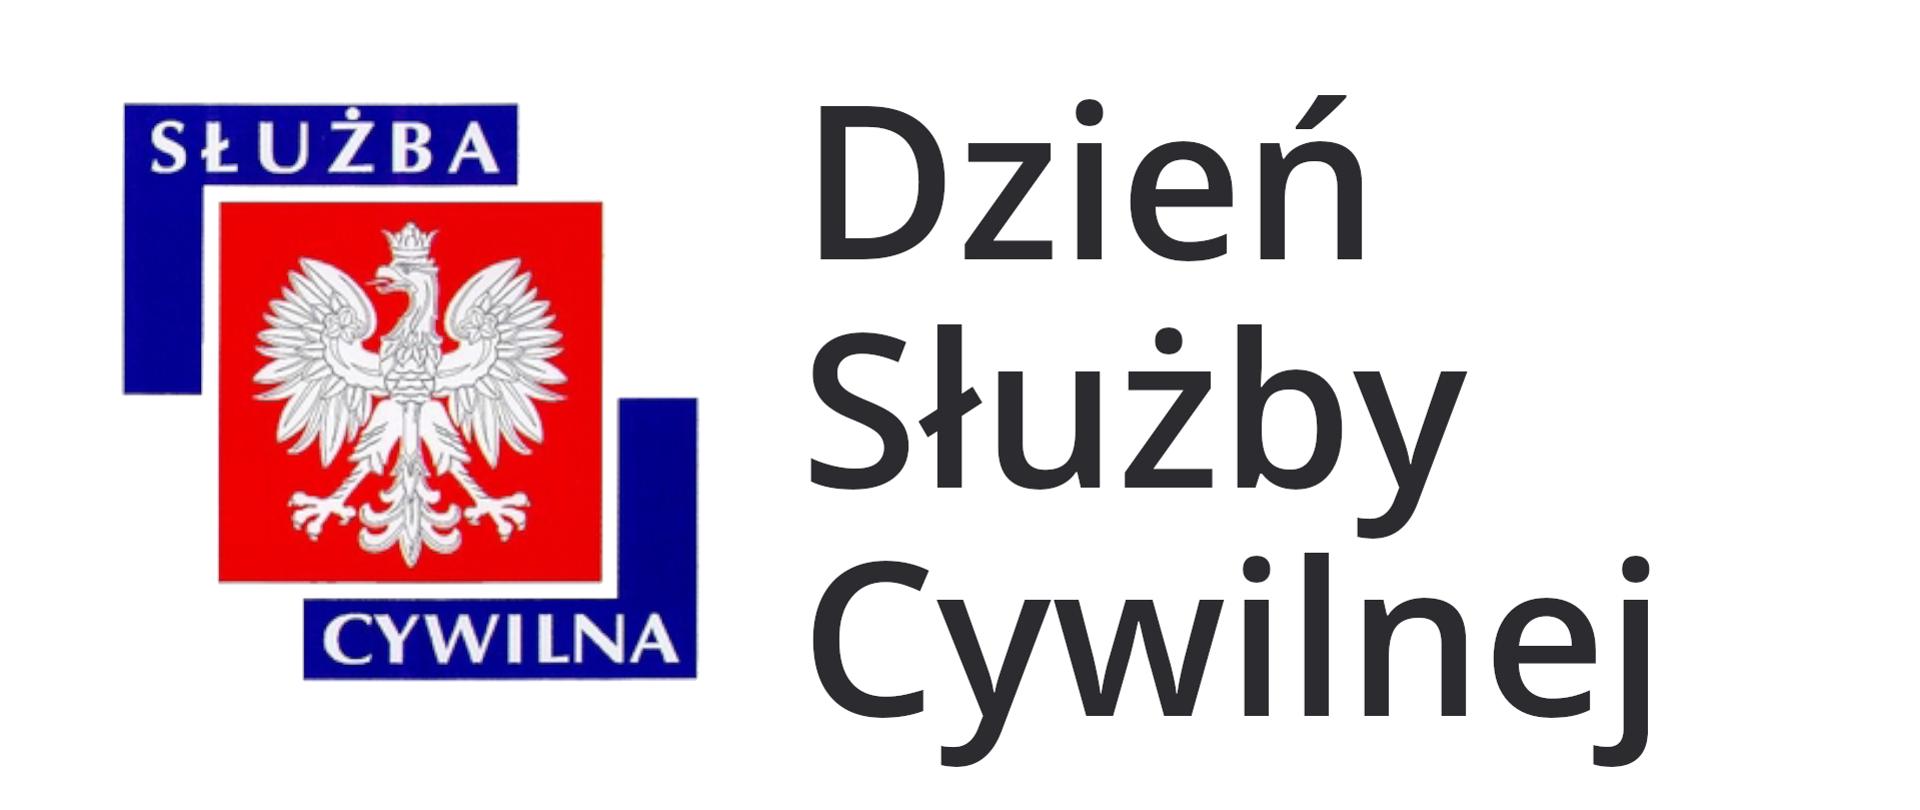 Ilustracja przedstawia baner z logo Służby Cywilnej po prawej stronie i napisem po prawej Dzień Służby Cywilnej